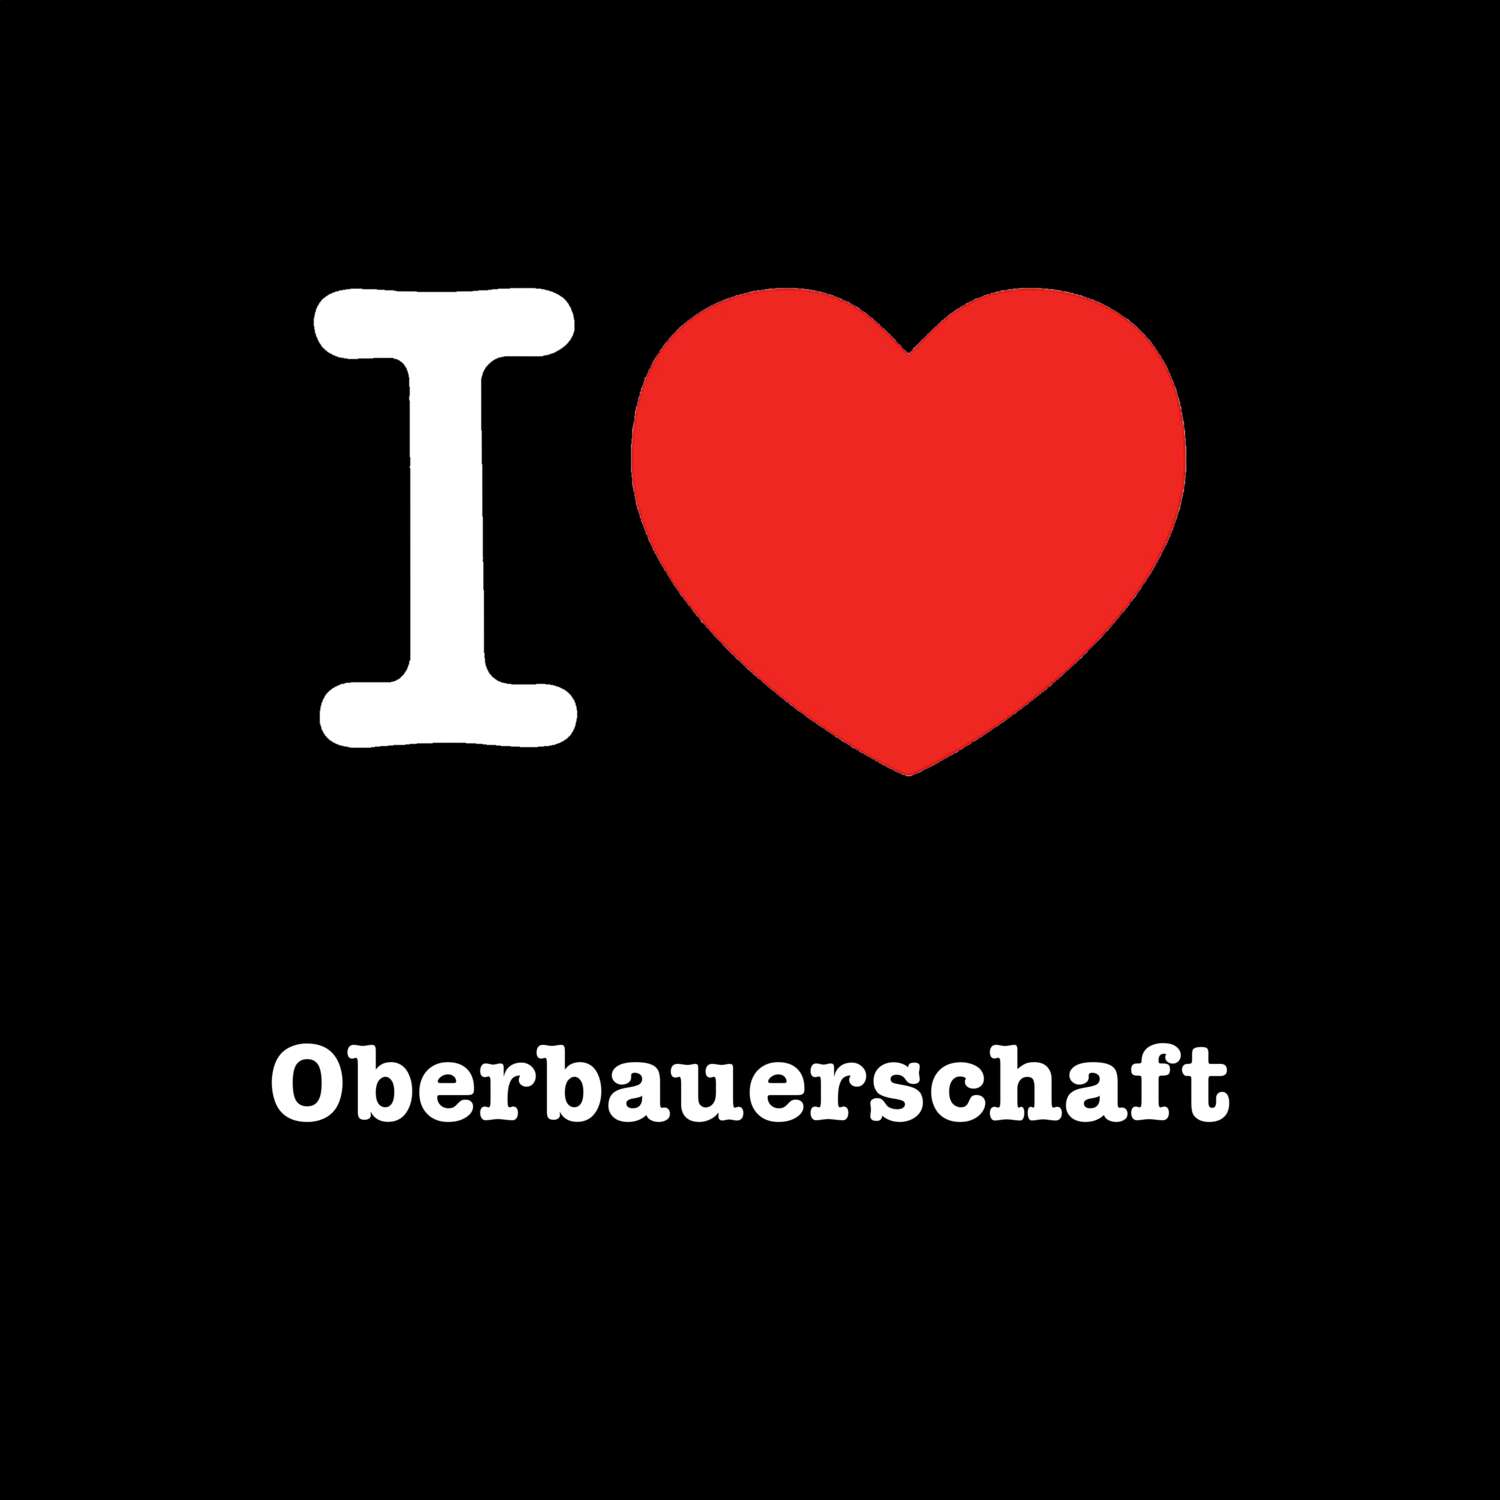 Oberbauerschaft T-Shirt »I love«